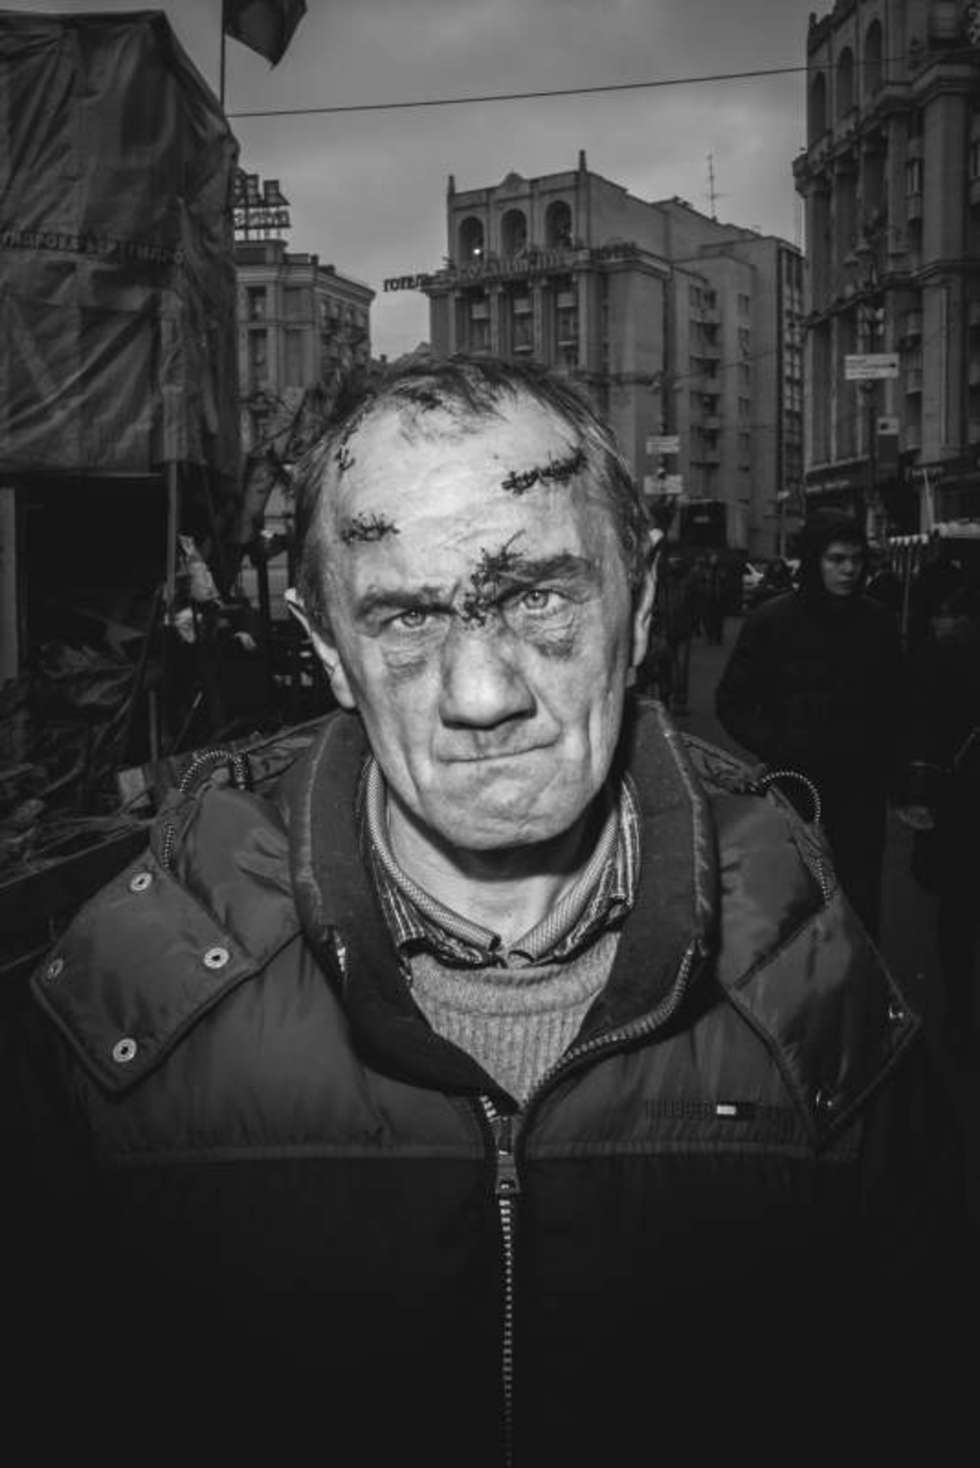  <b>Zdjęcie pojedyncze - II miejsce w kategorii PORTRET SESYJNY</b><br /><br />Kijów. Po tragicznych wydarzeniach z tzw. czarnego czwartku 20 lutego 2014 roku, gdy siły rządowe i snajperzy strzelali do demonstrantów, zabijając ok. 70 osób, obywatele Ukrainy składali hołd poległym bohaterom. Zdjęcie pochodzi z cyklu portretów ludzi opłakujących ofiary &#8211; uczestnik walk na barykadach został opatrzony w szpitalu polowym i wrócił na Majdan Niepodległości, gdzie pomagał nosić trumny z ciałami poległych. 25 lutego 2014 roku.